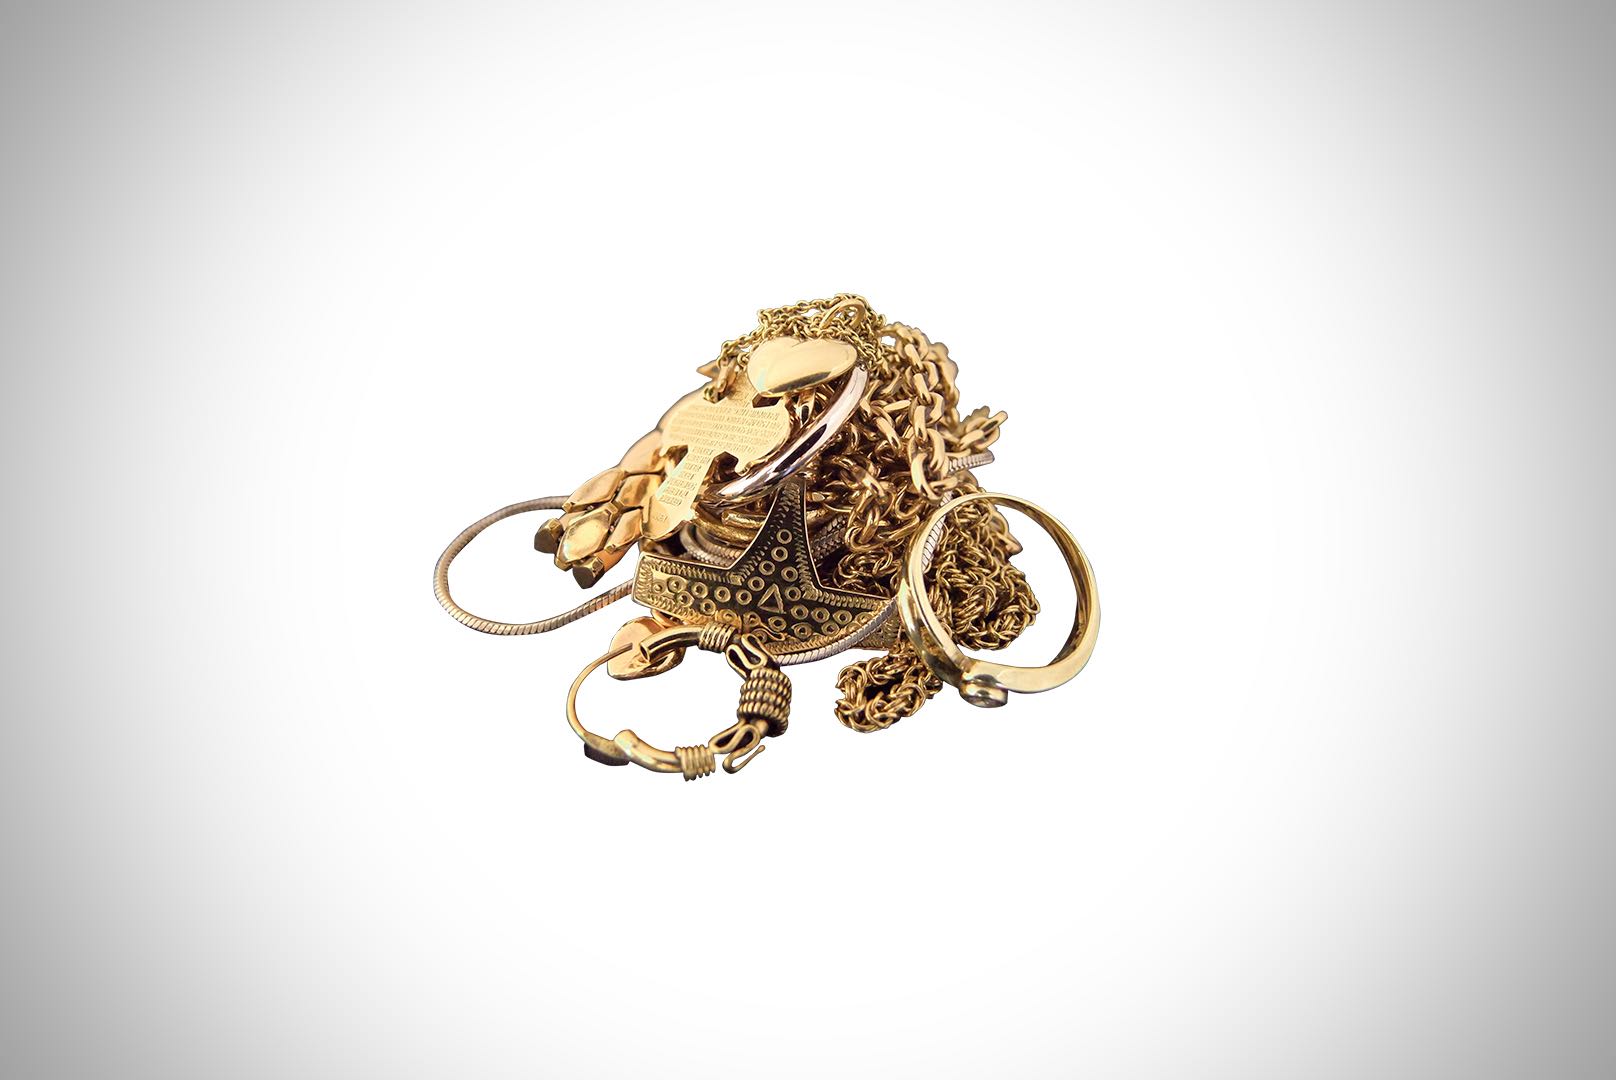 Gammelt guld til vielsesringe - Få designet dine vielsesringe af dit gamle guld hos Jan Jørgensen Smykker